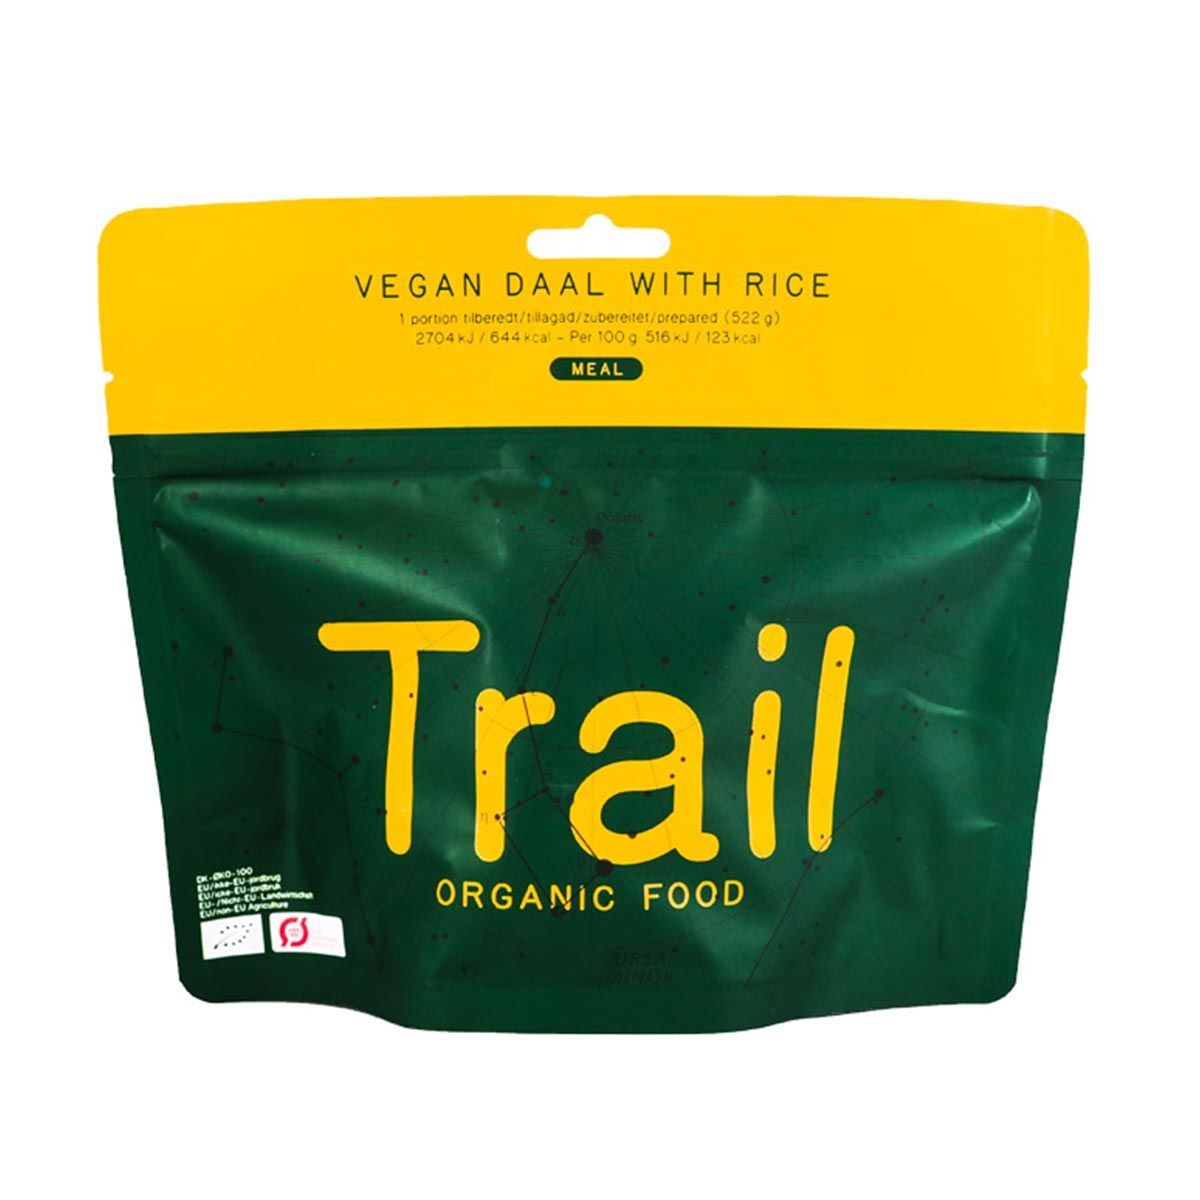 Organic vegan daal with rice